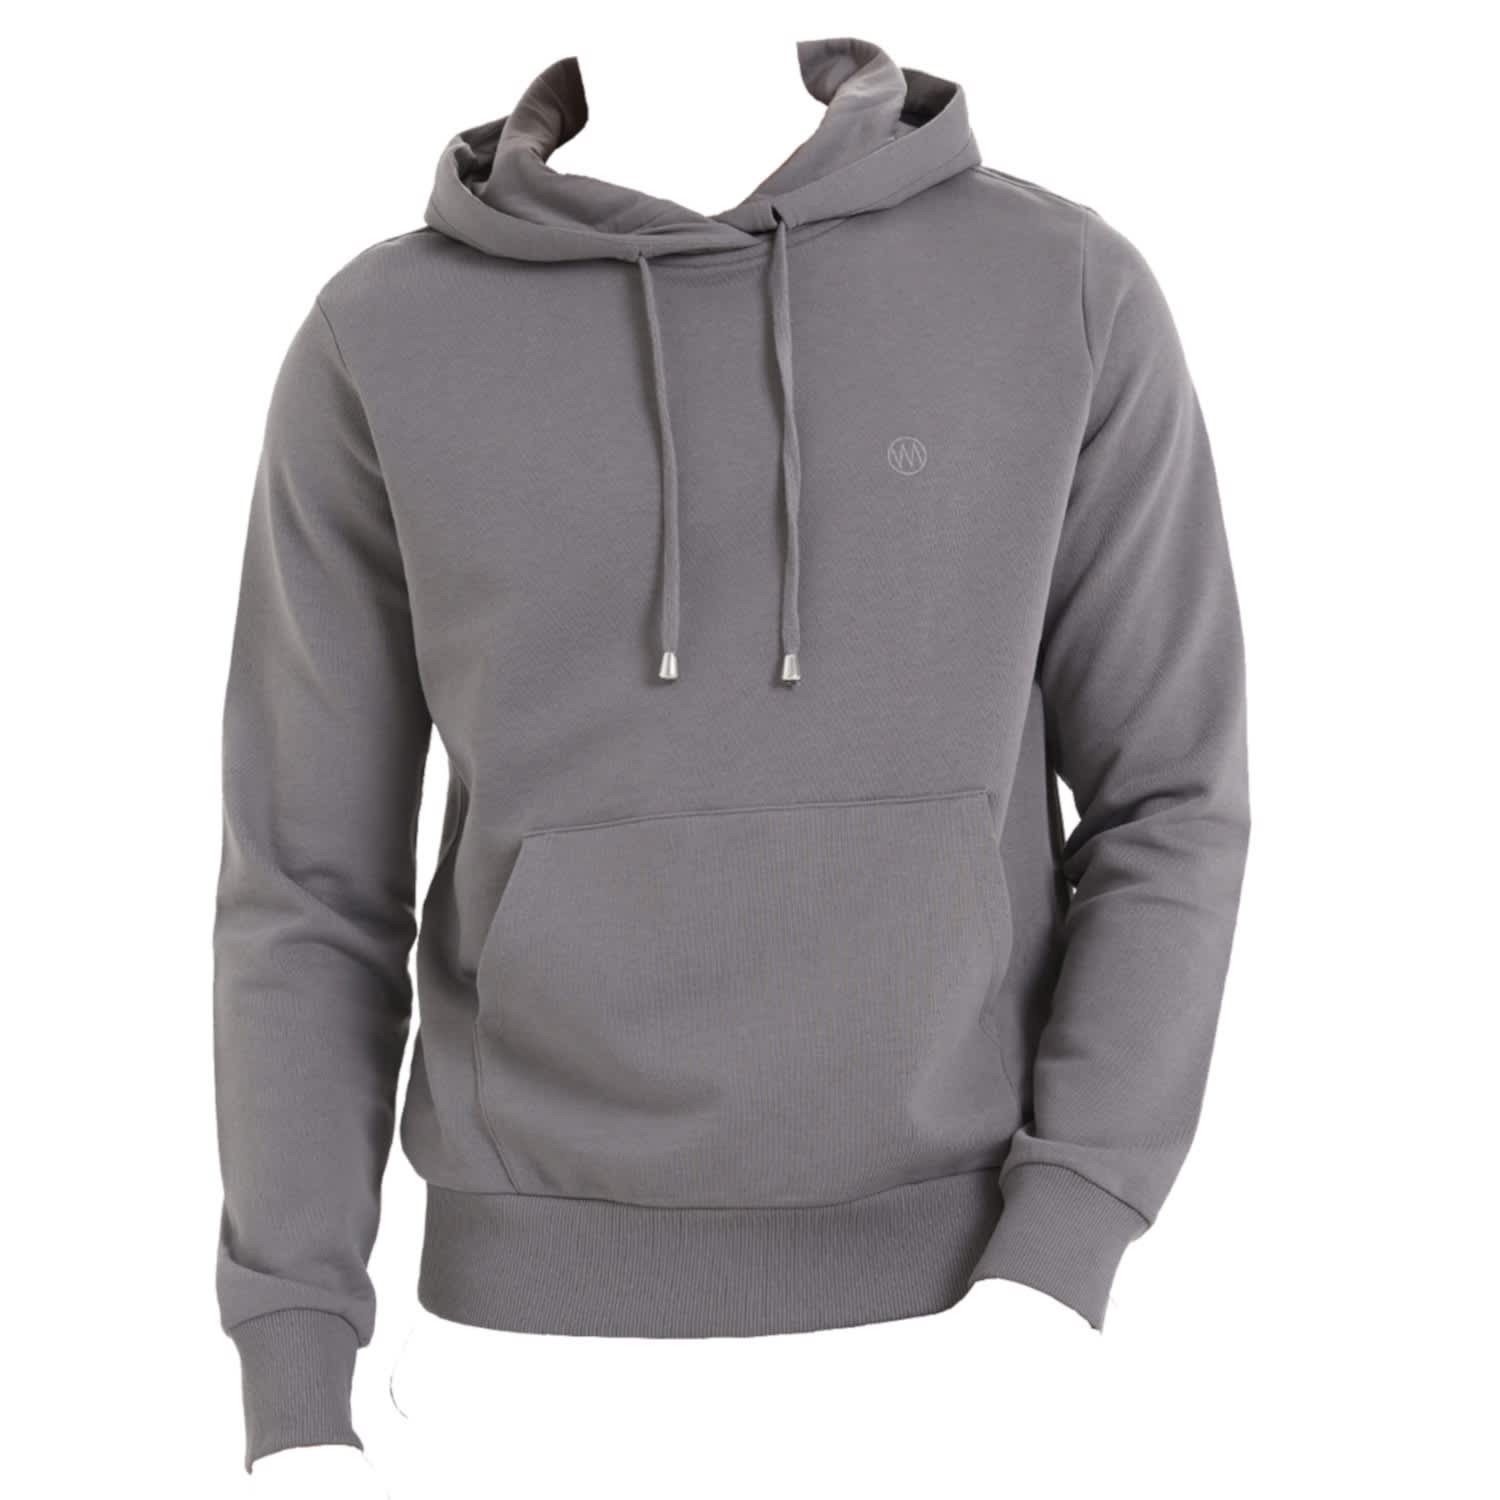 charcoal gray sweatshirt